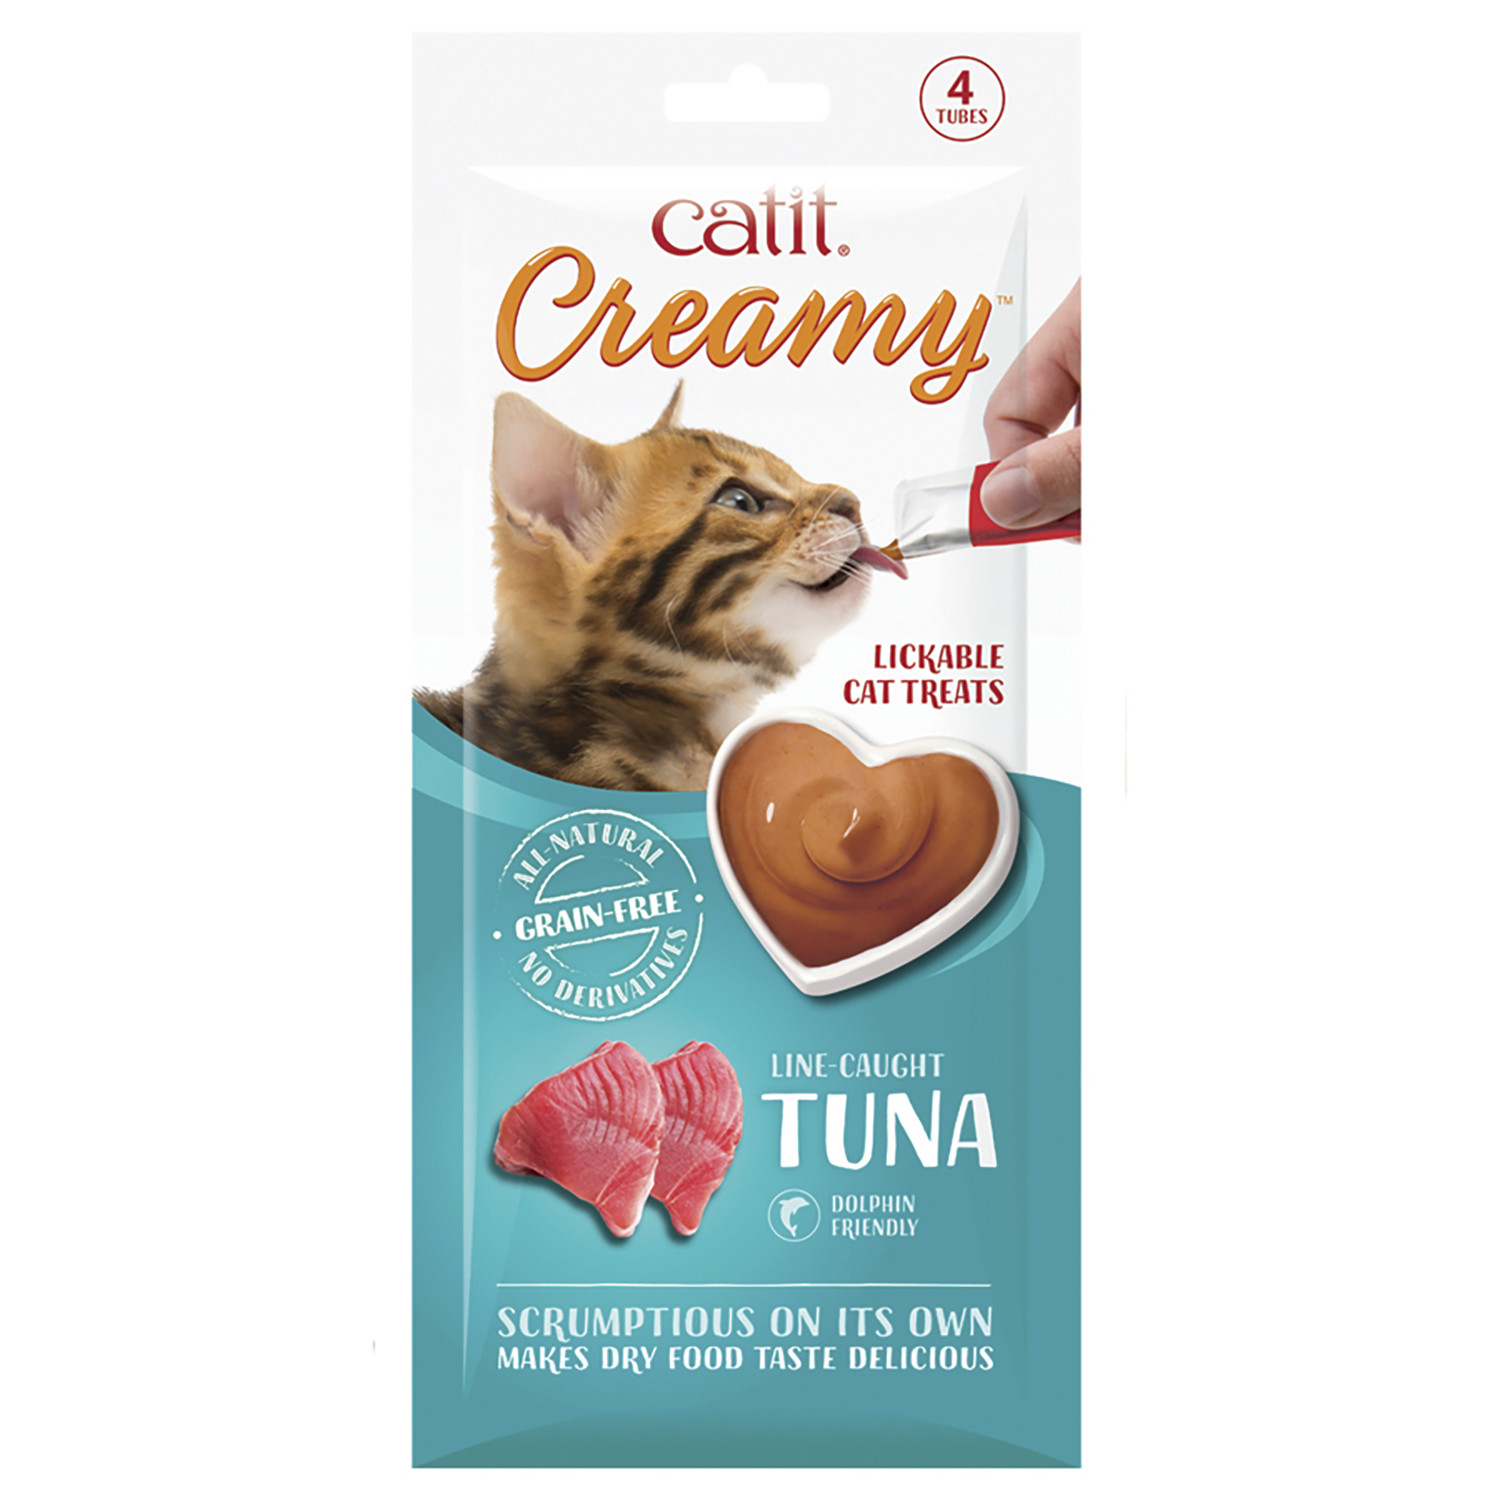 Catit Creamy Lickable Treats - Tuna Image